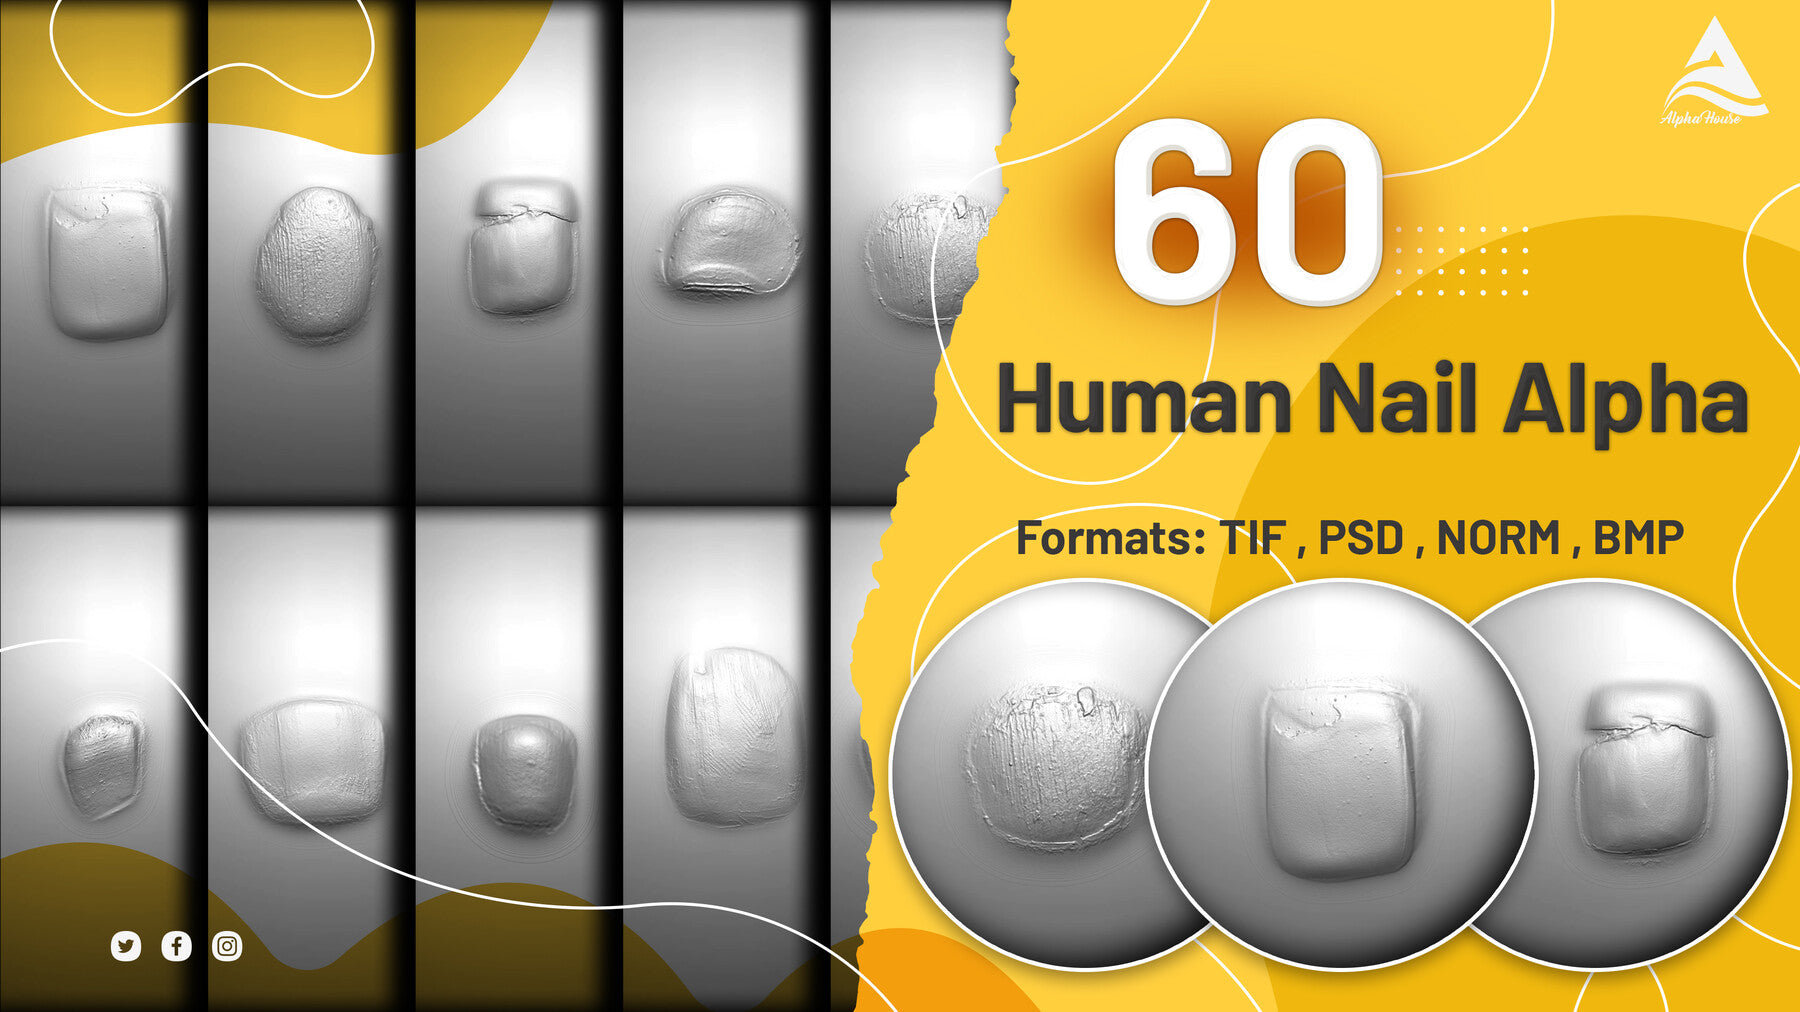 60 Human Nail Alpha